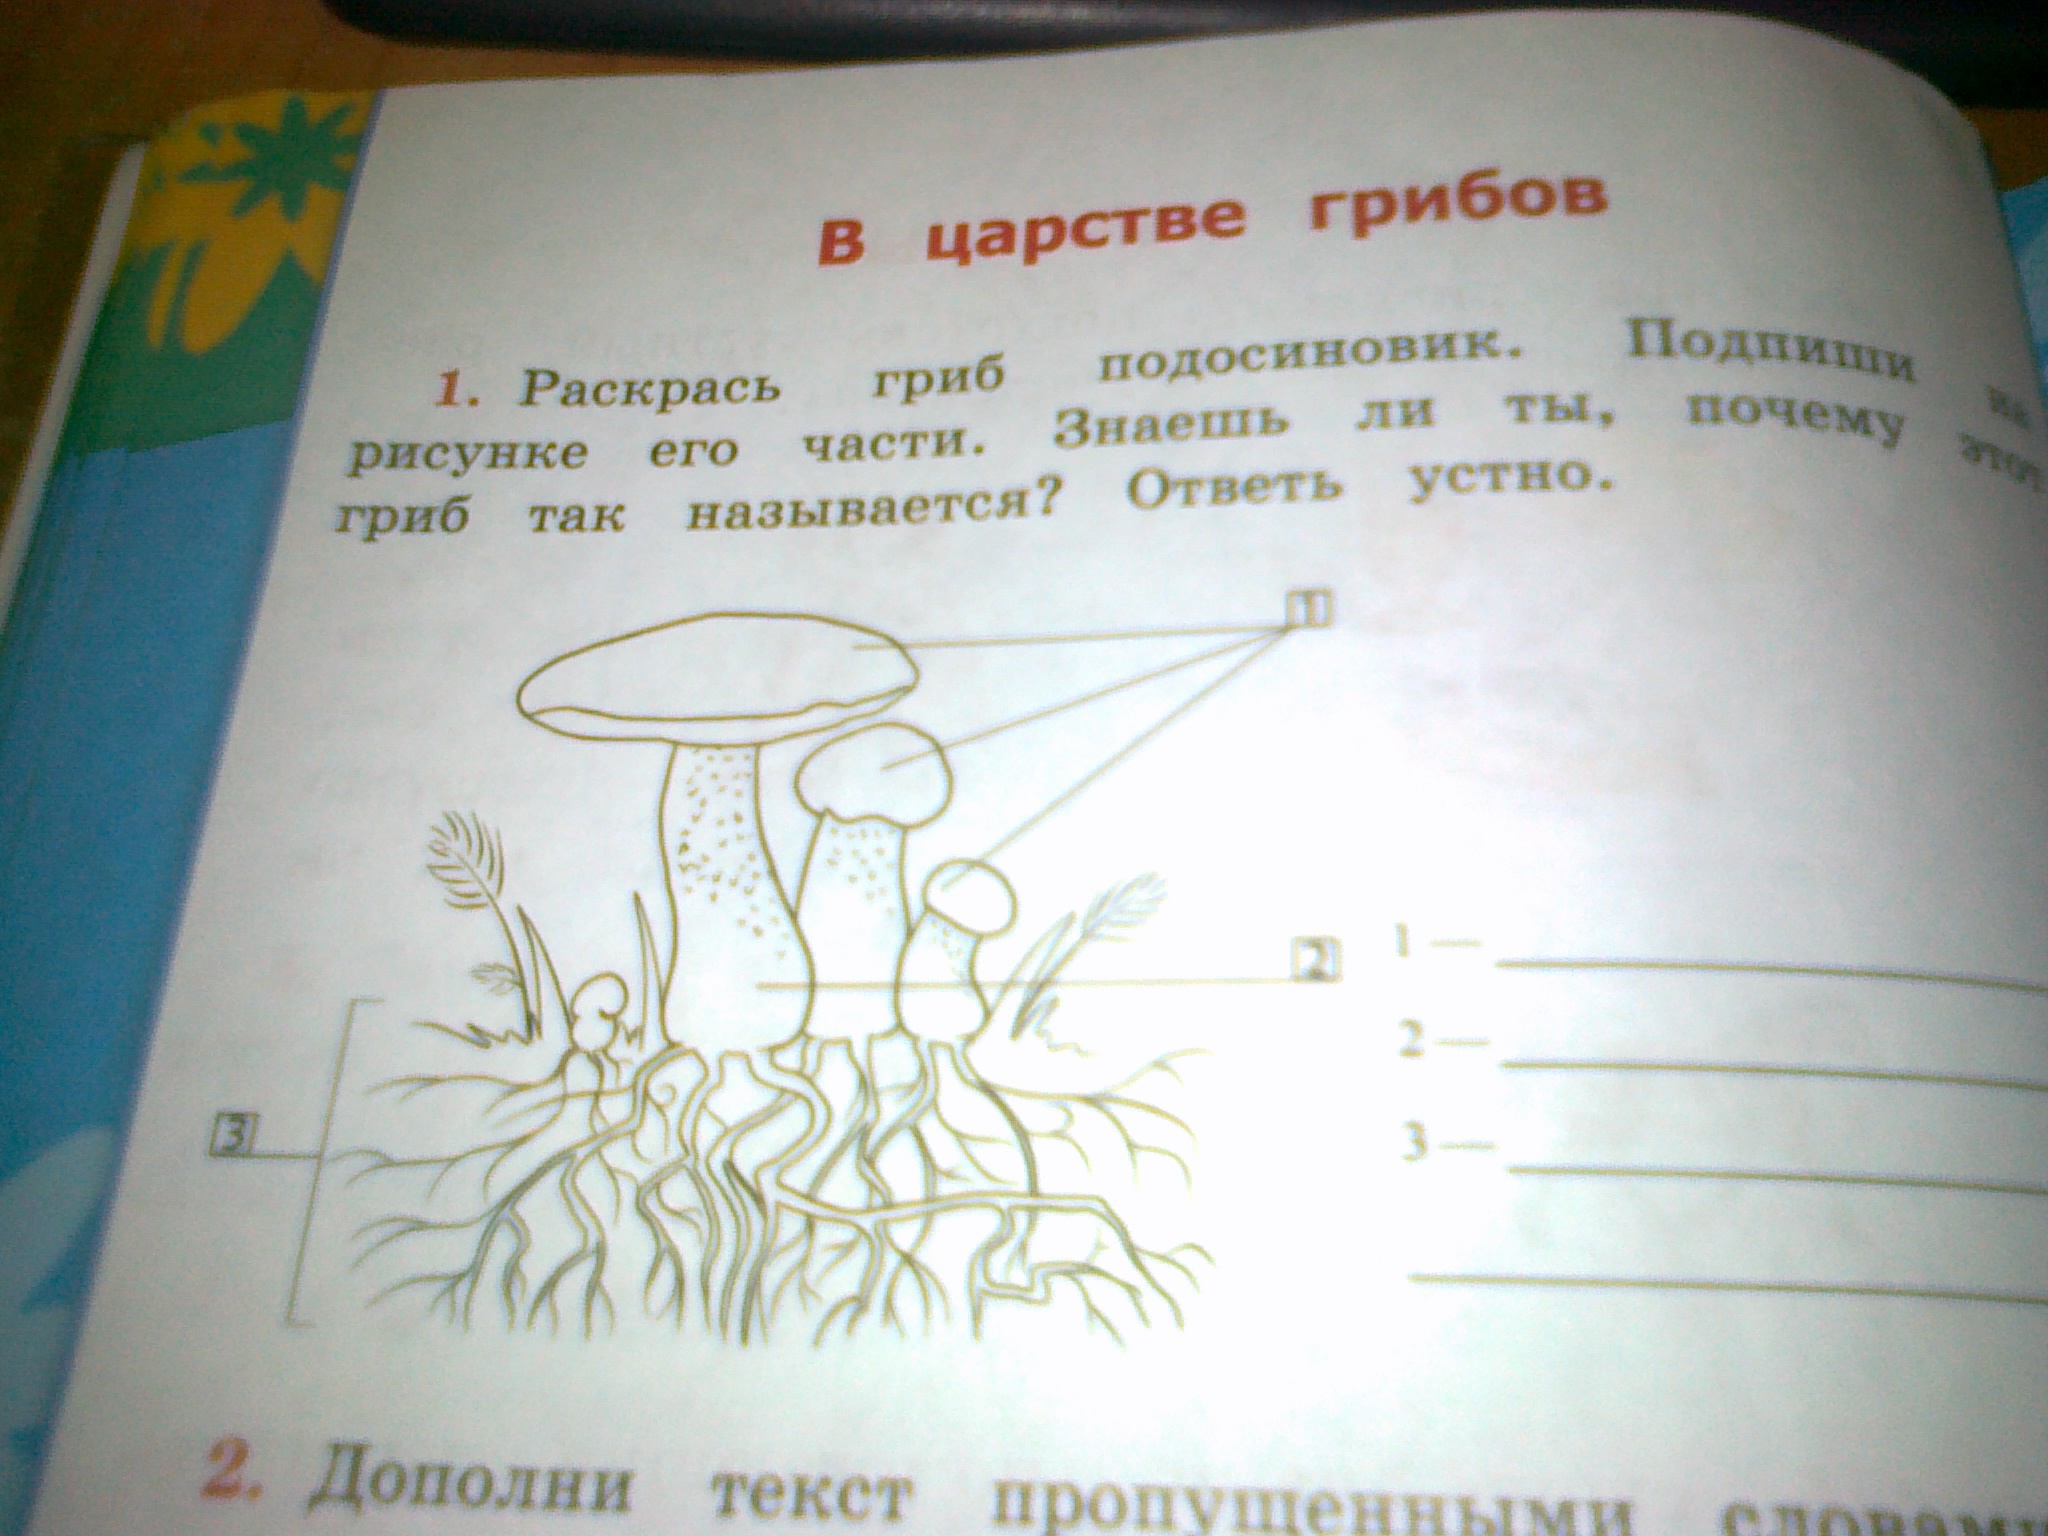 Рассмотри рисунок дополни текст. Раскрась гриб подосиновик Подпиши. Подписать части гриба подосиновик. Предложение со словом грибница.